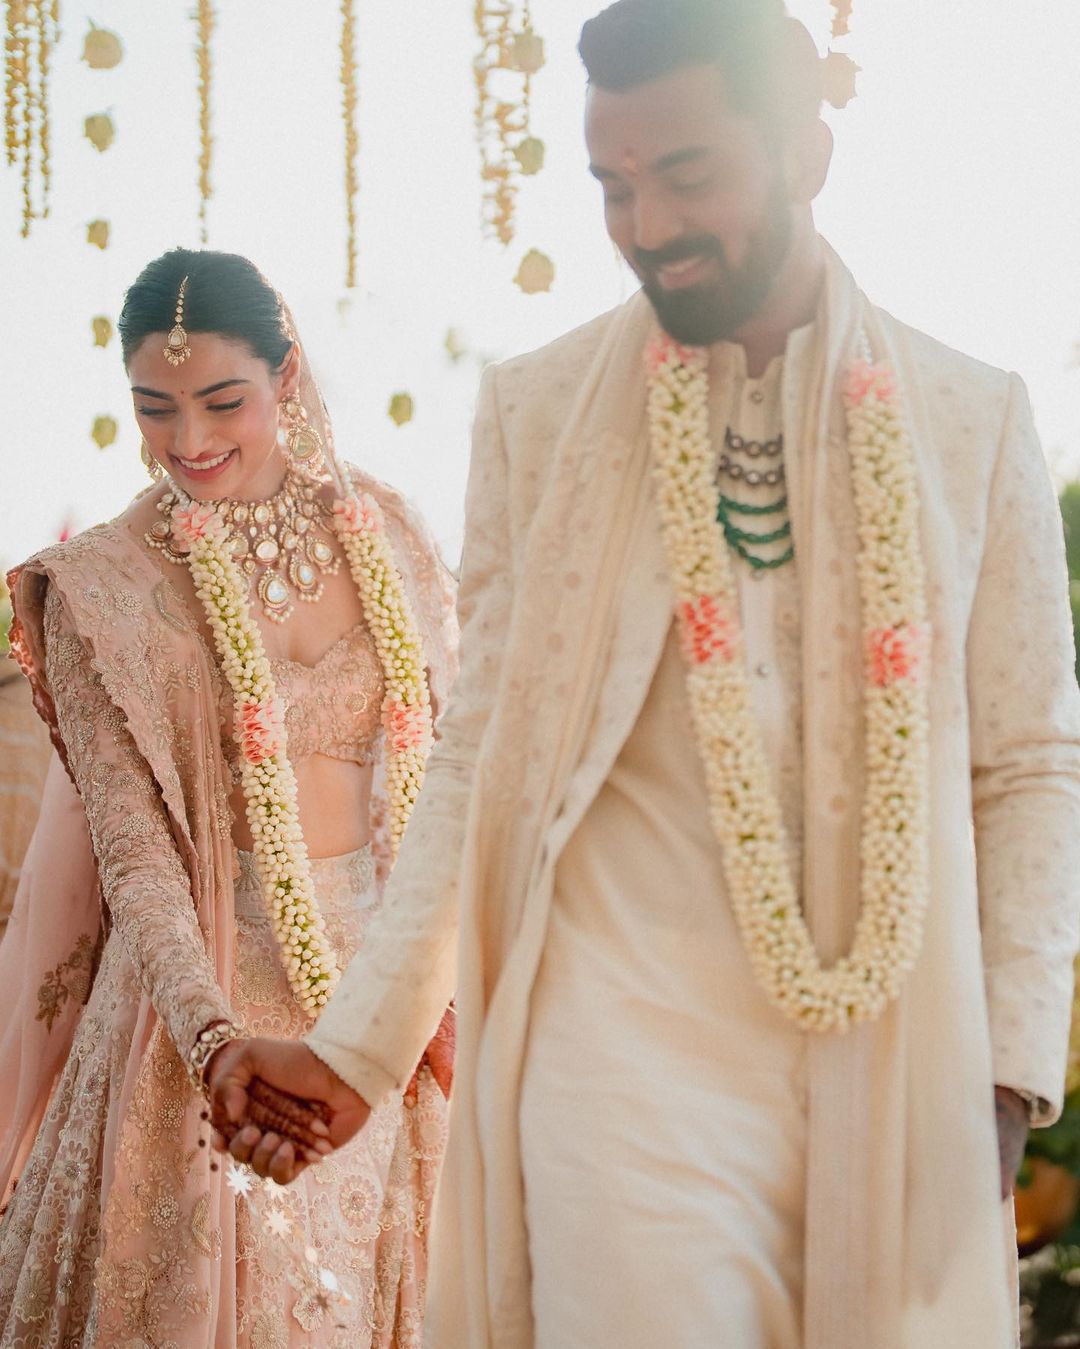  खबरों की मानें, तो 61 साल के सुनील शेट्टी की बेटी की शादी में इंडस्ट्री से उनके गिने-चुने दोस्त शामिल हुए, जिनमें सलमान खान, जैकी श्रॉफ, अजय देवगन और अक्षय कुमार जैसे सितारे शामिल हैं. (फोटो साभार: Instagram@athiyashetty)